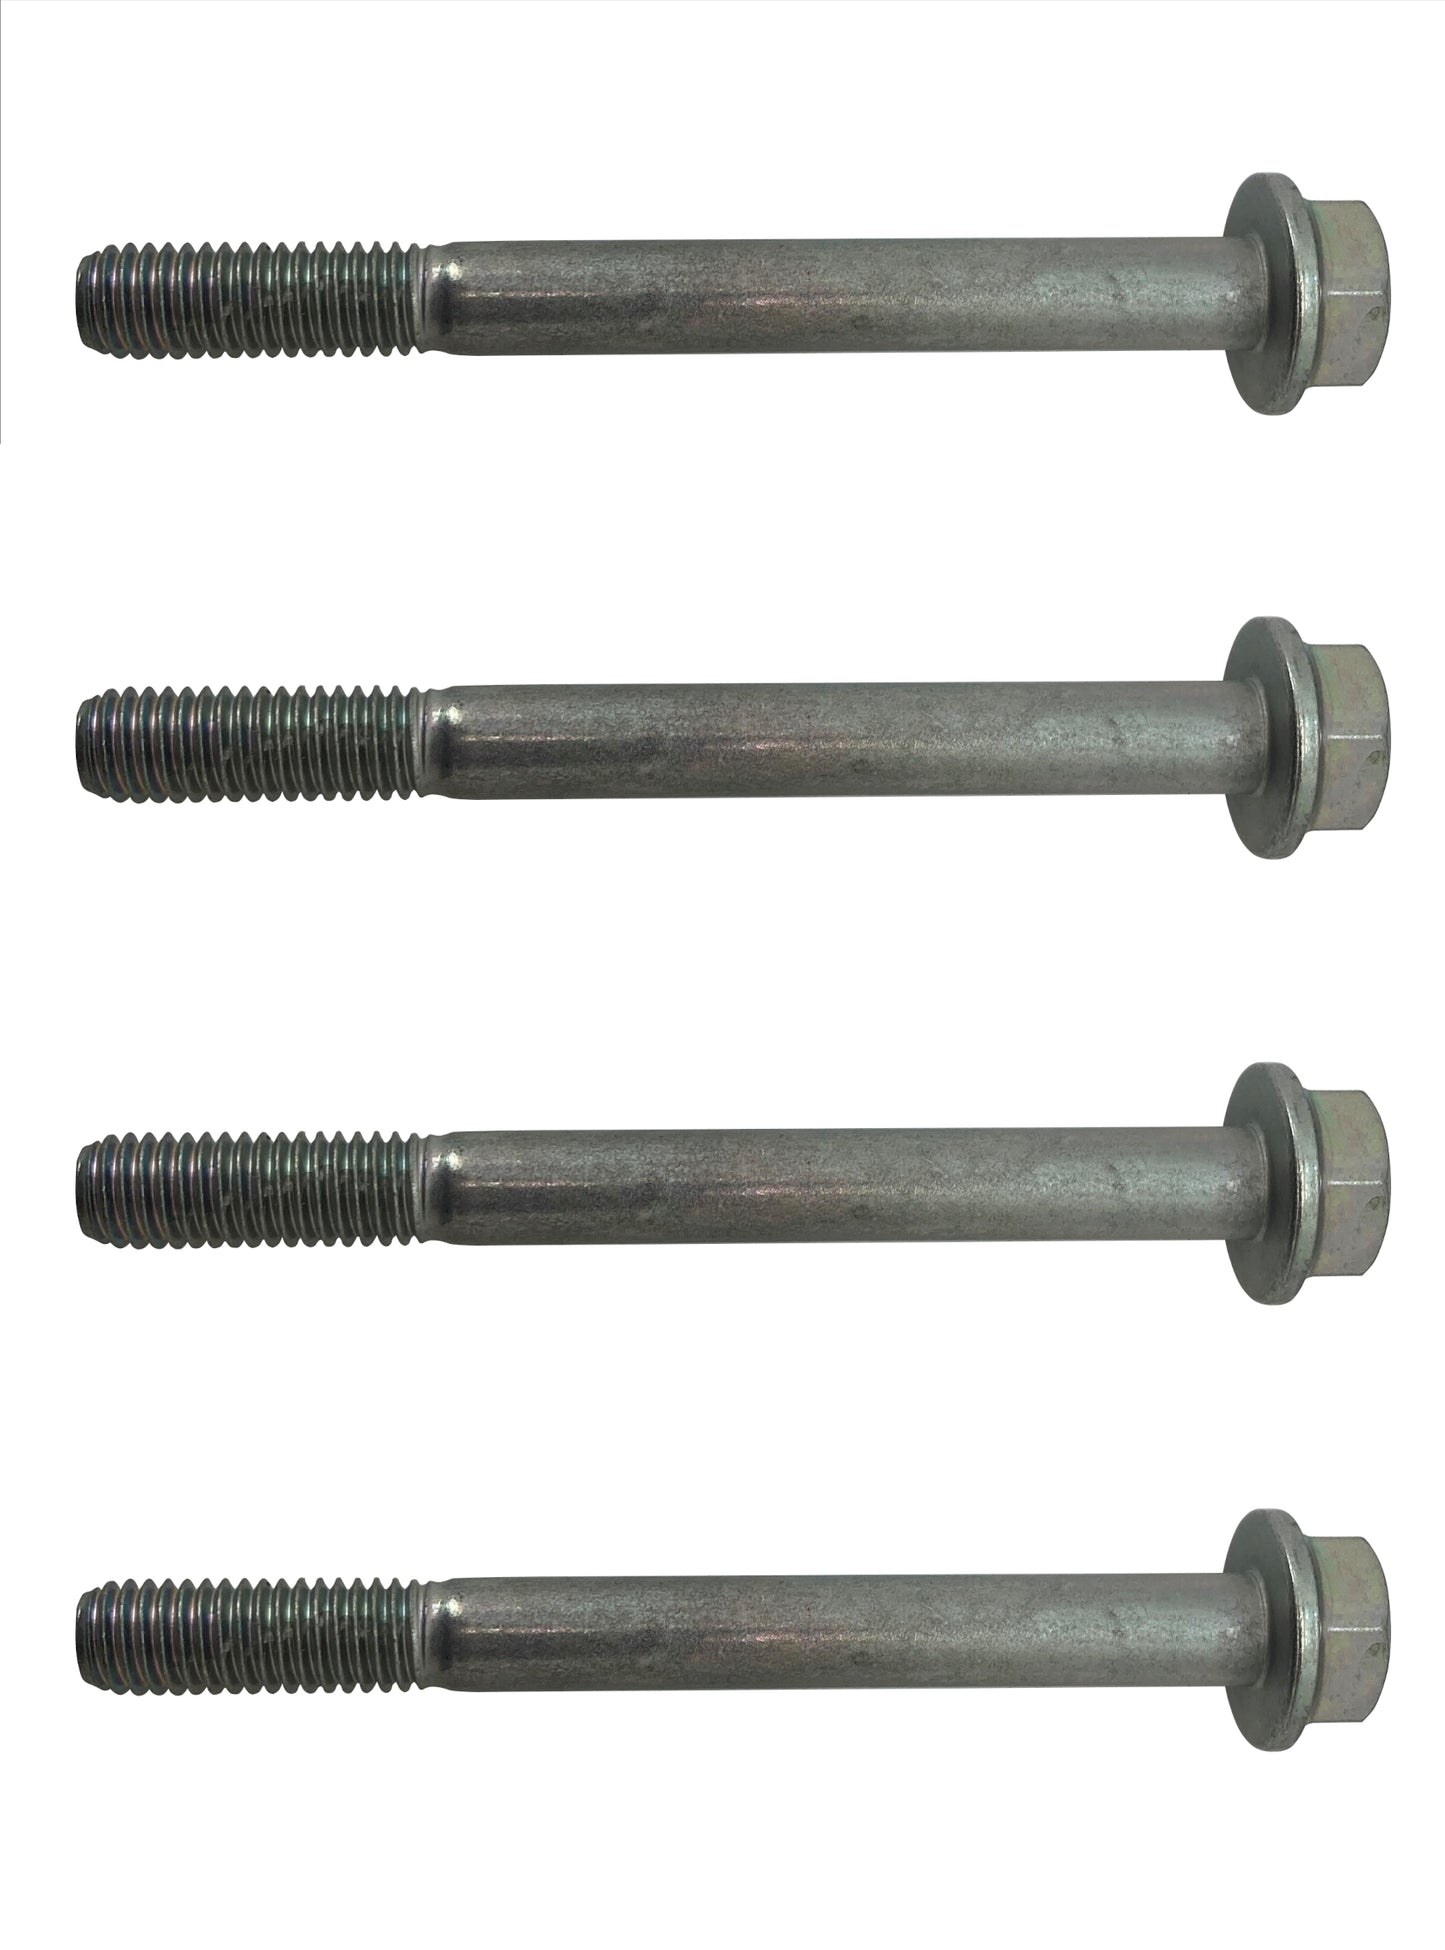 John Deere Original Equipment Screw (Pack of 4) - 19M8039